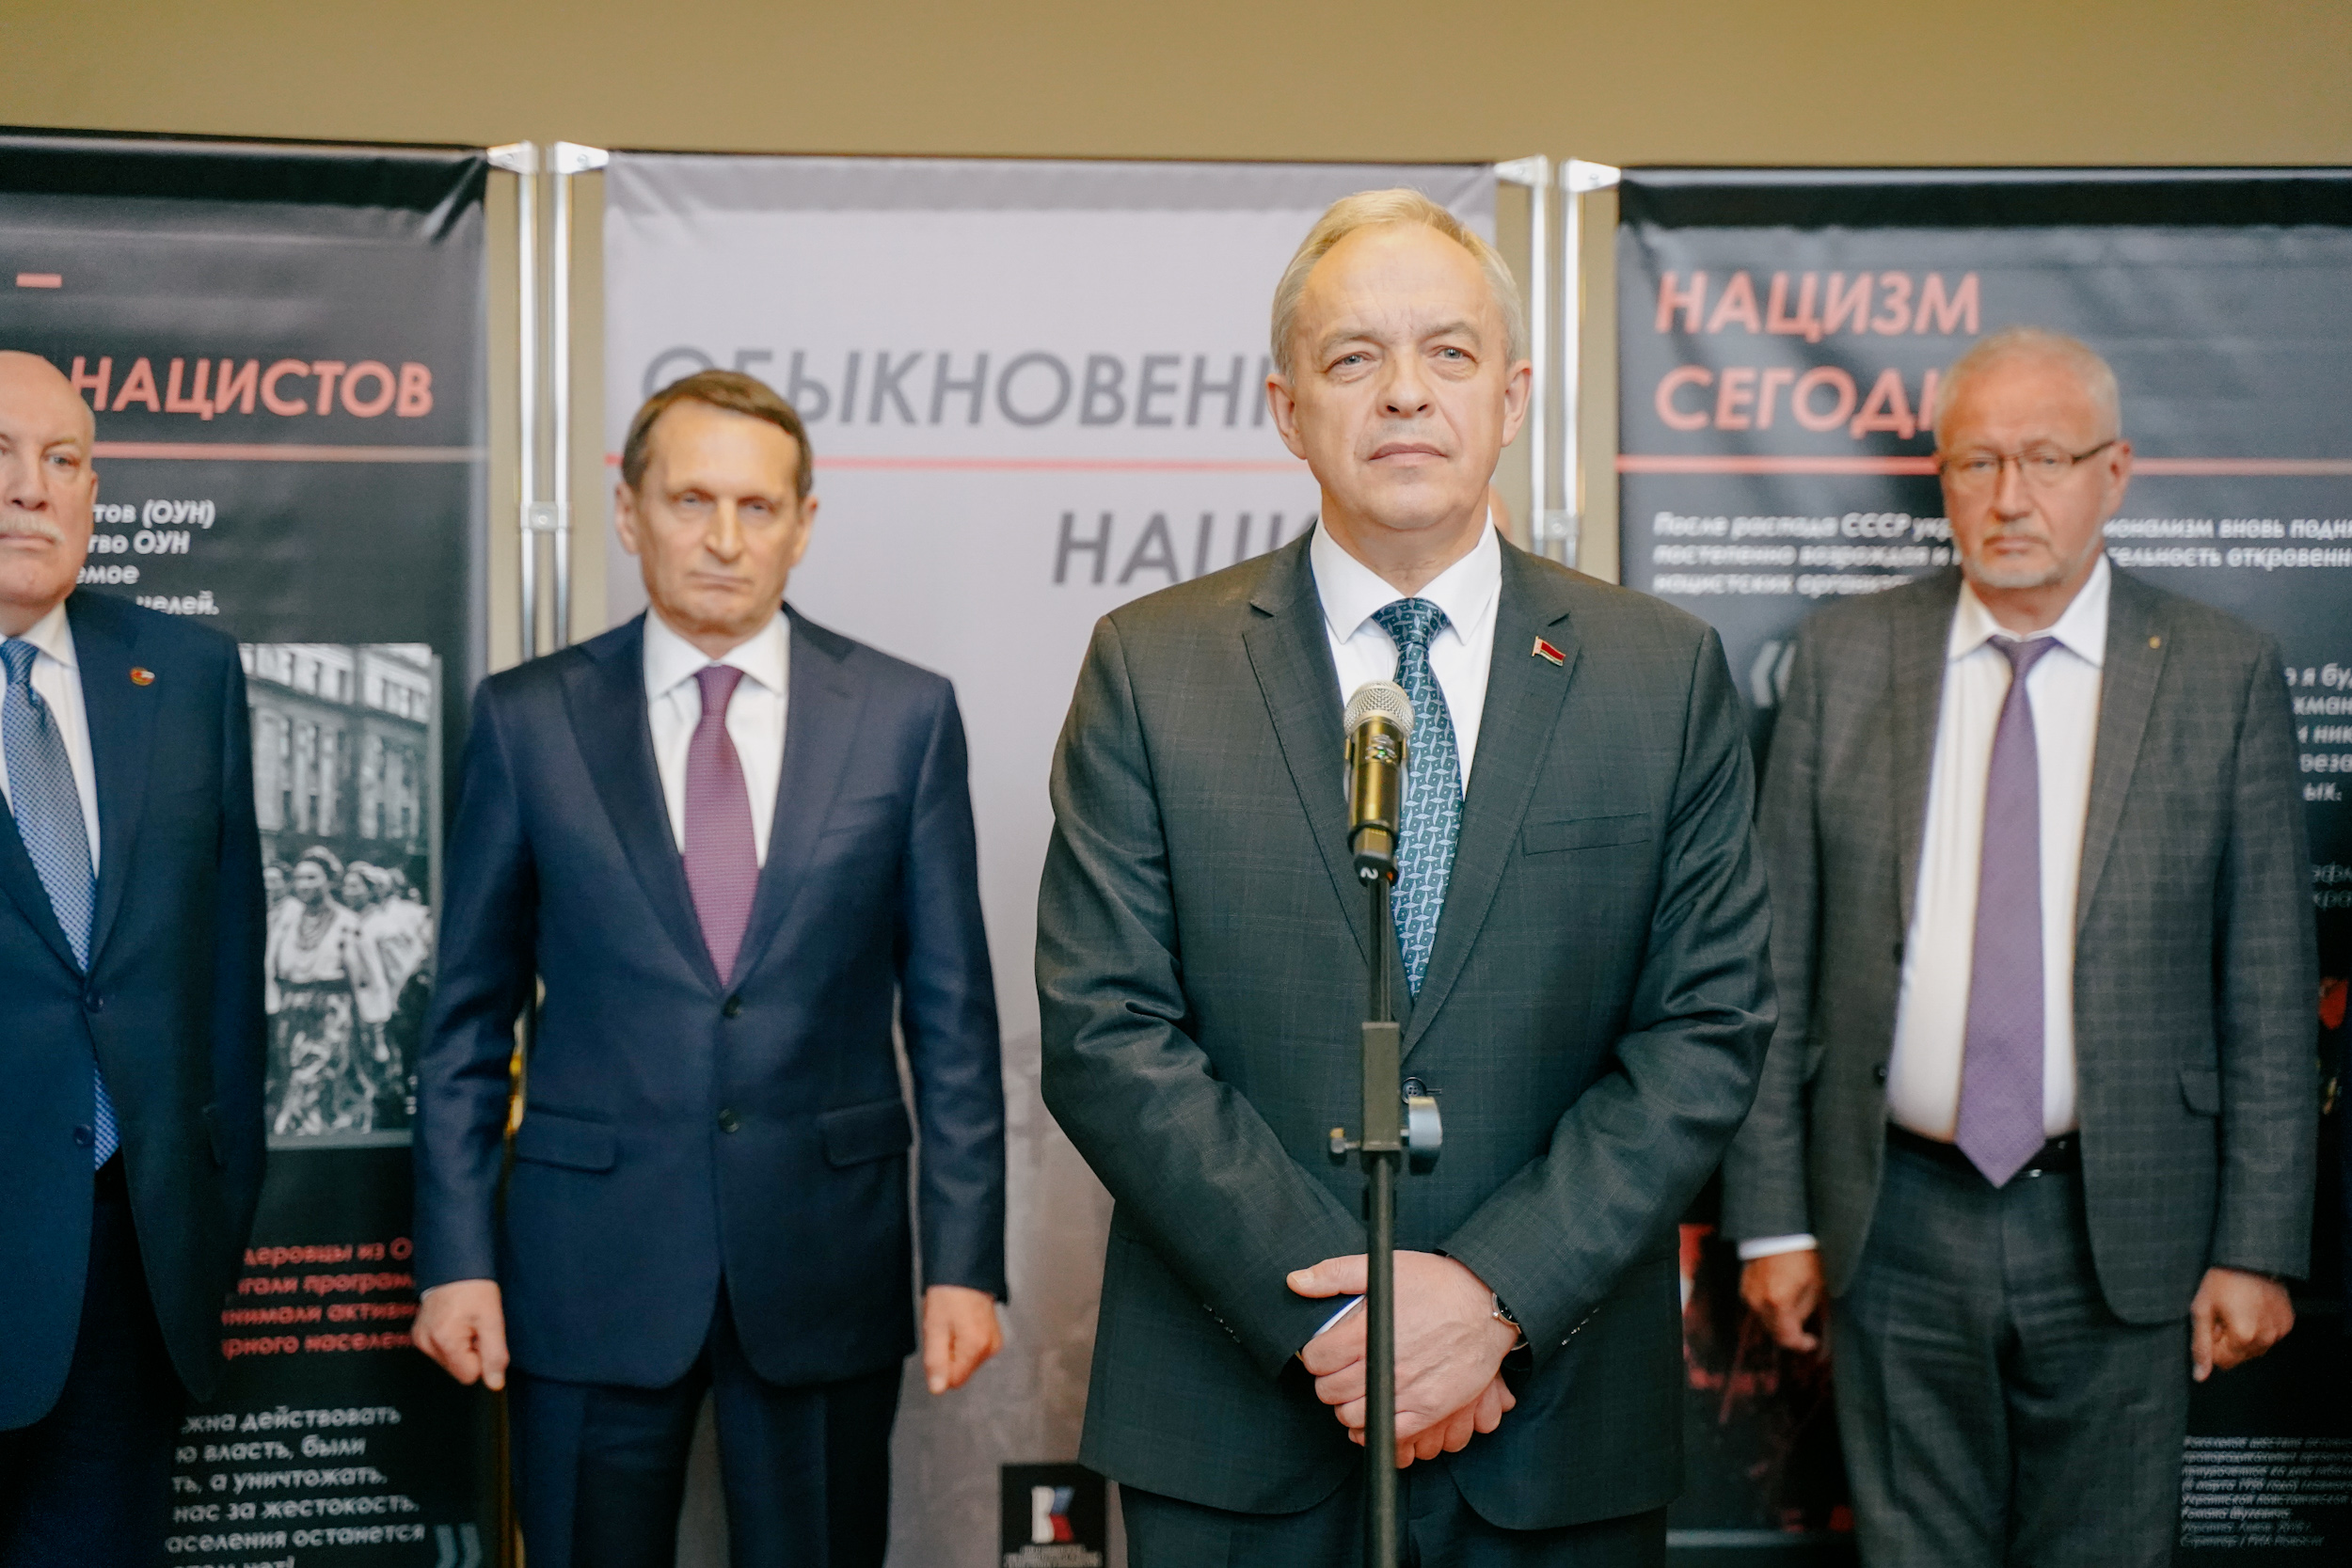 Председатель РИО Сергей Нарышкин открыл выставку «Обыкновенный нацизм» в Минске